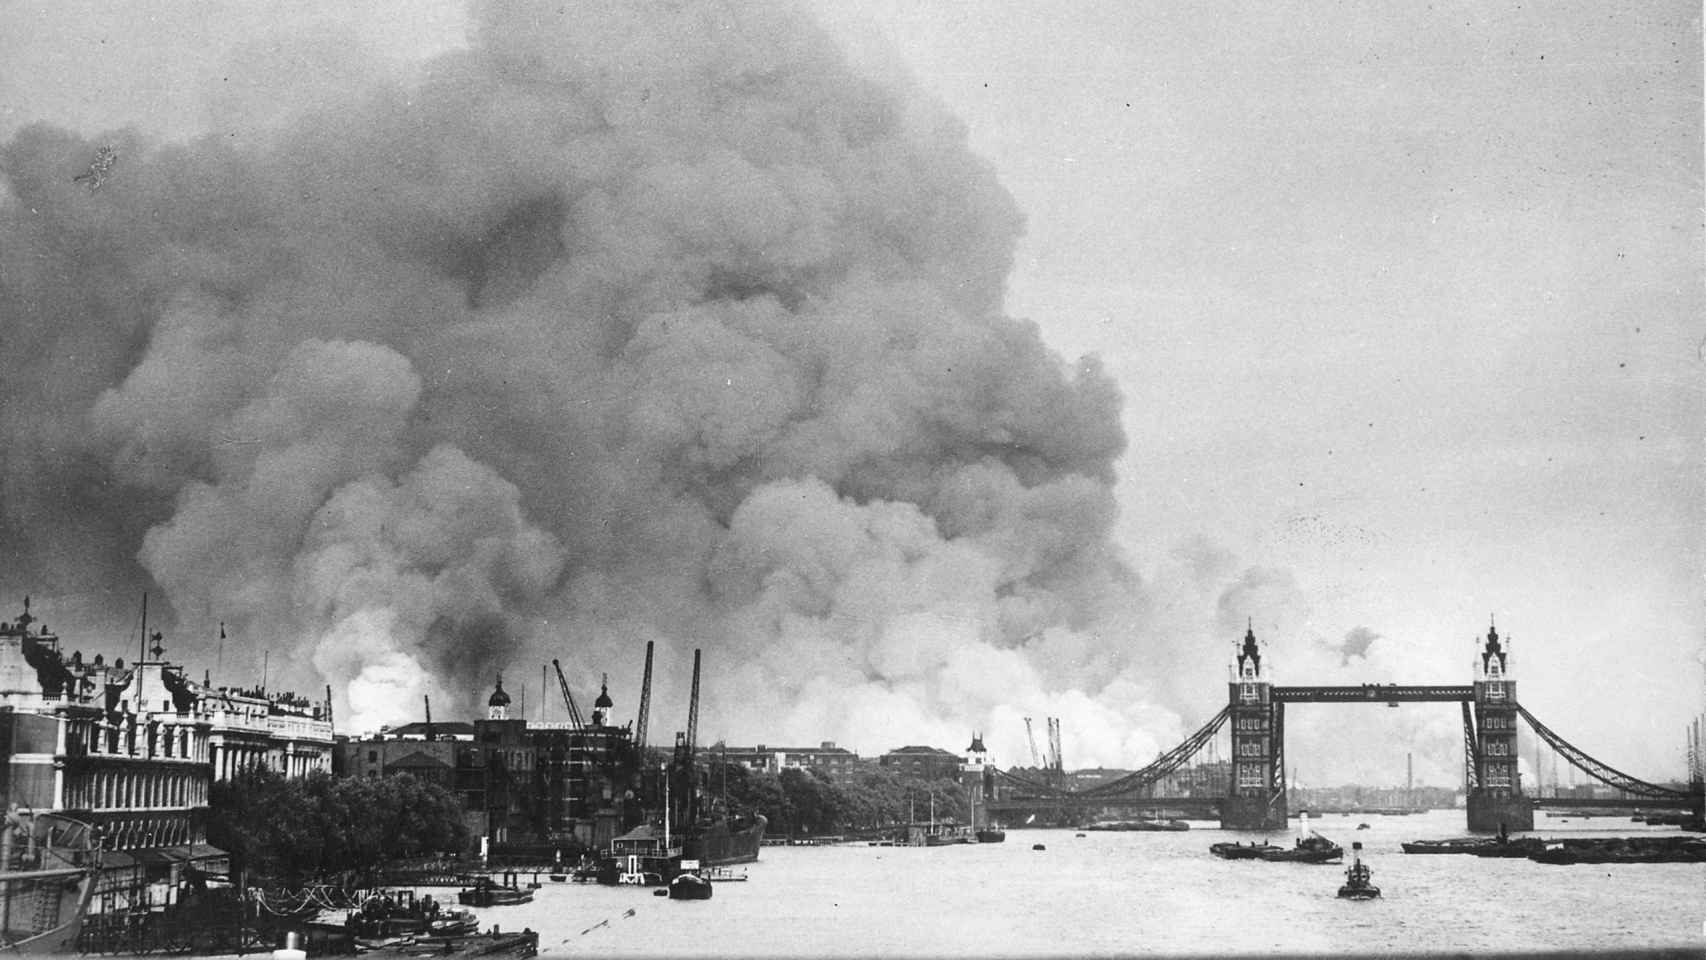 Vista del río Támesis y el humo en los puertos de Londres tras los primeros bombardeos del 7 de septiembre de 1940.